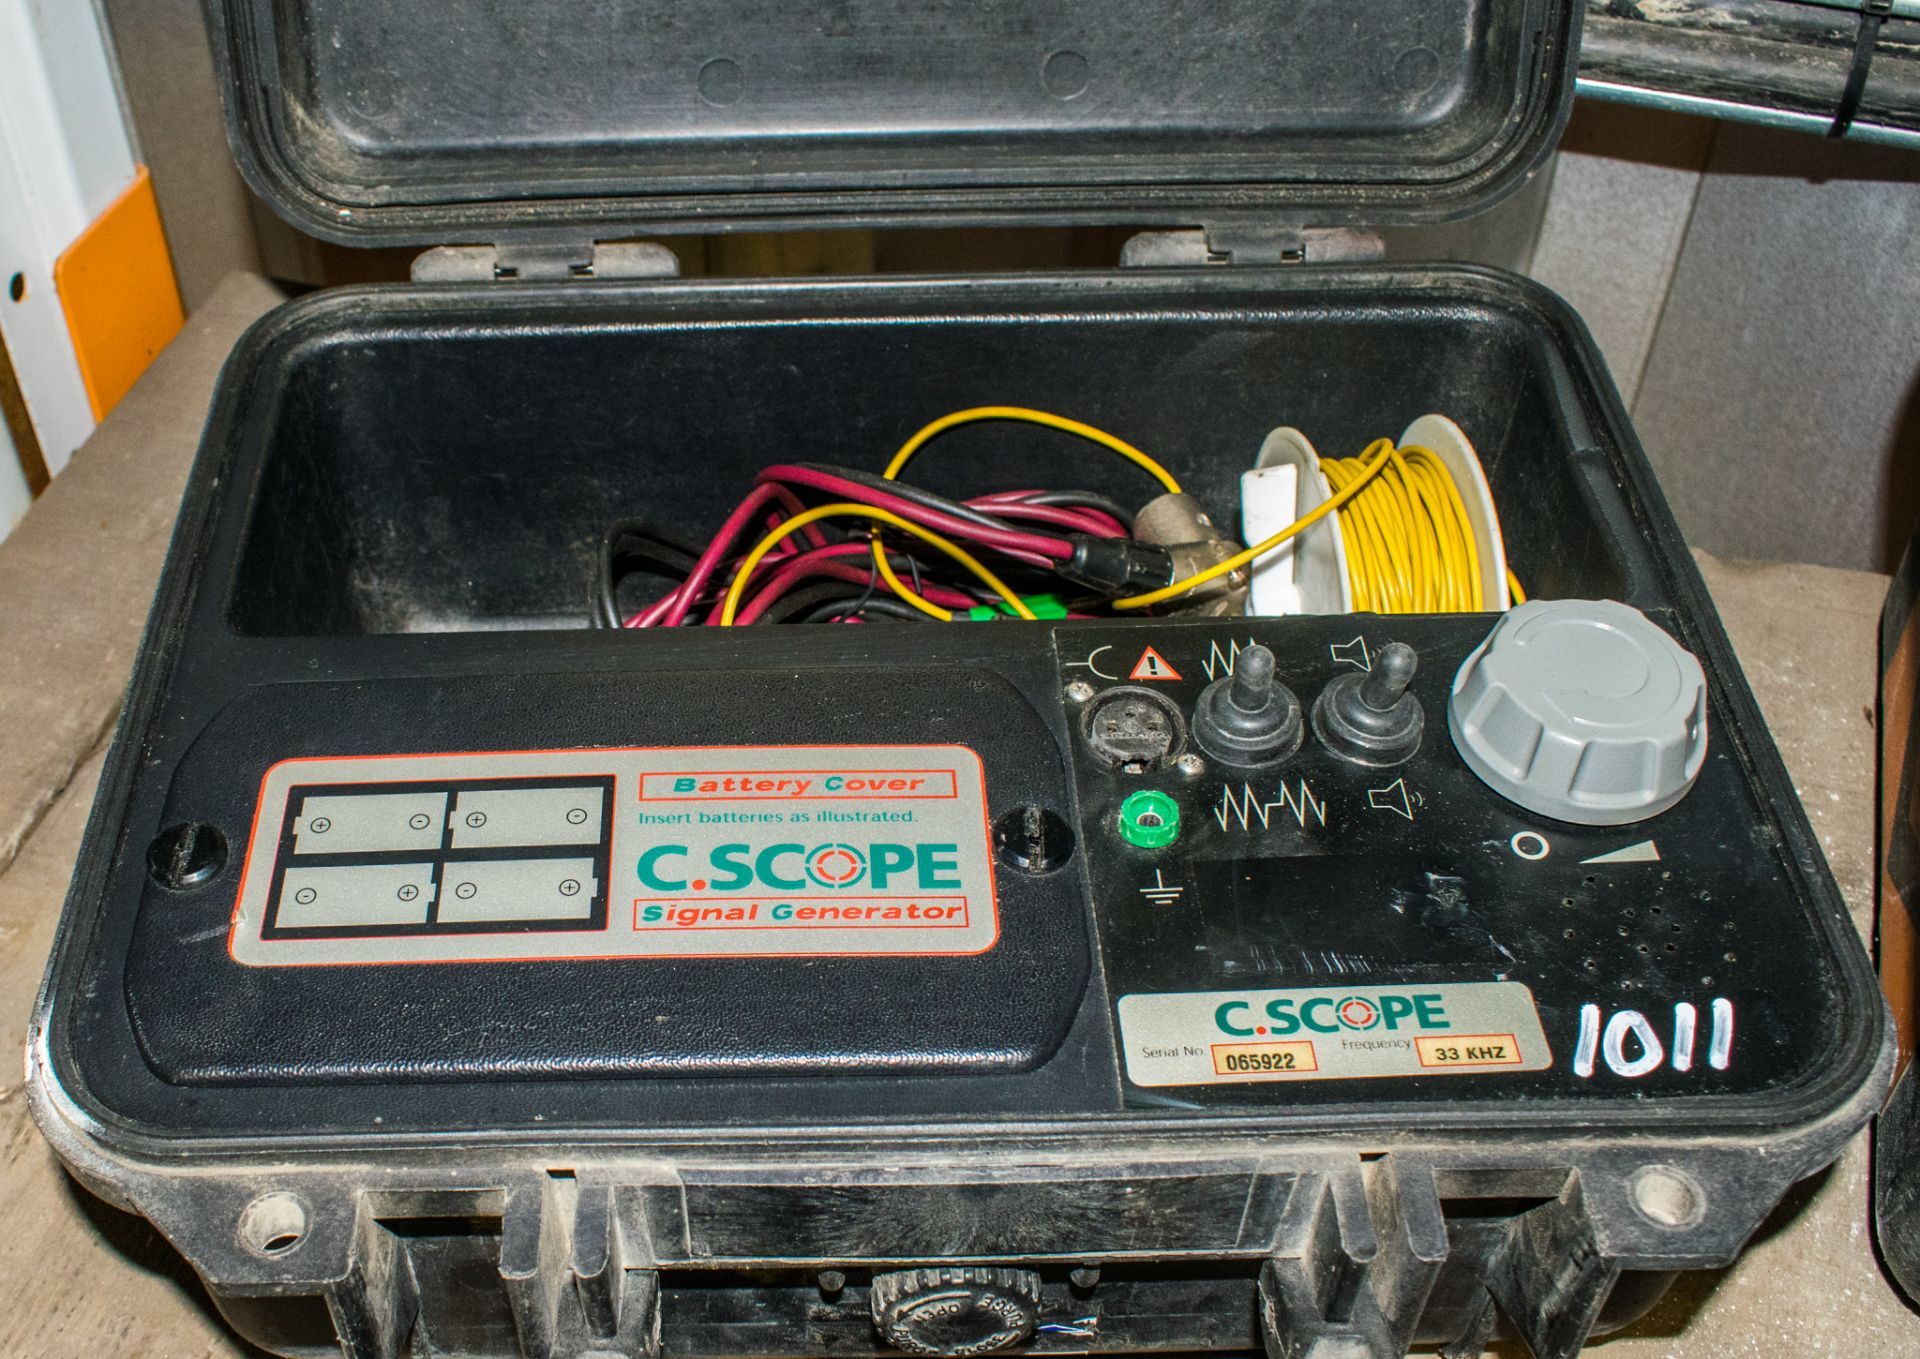 C-Scope signal generator